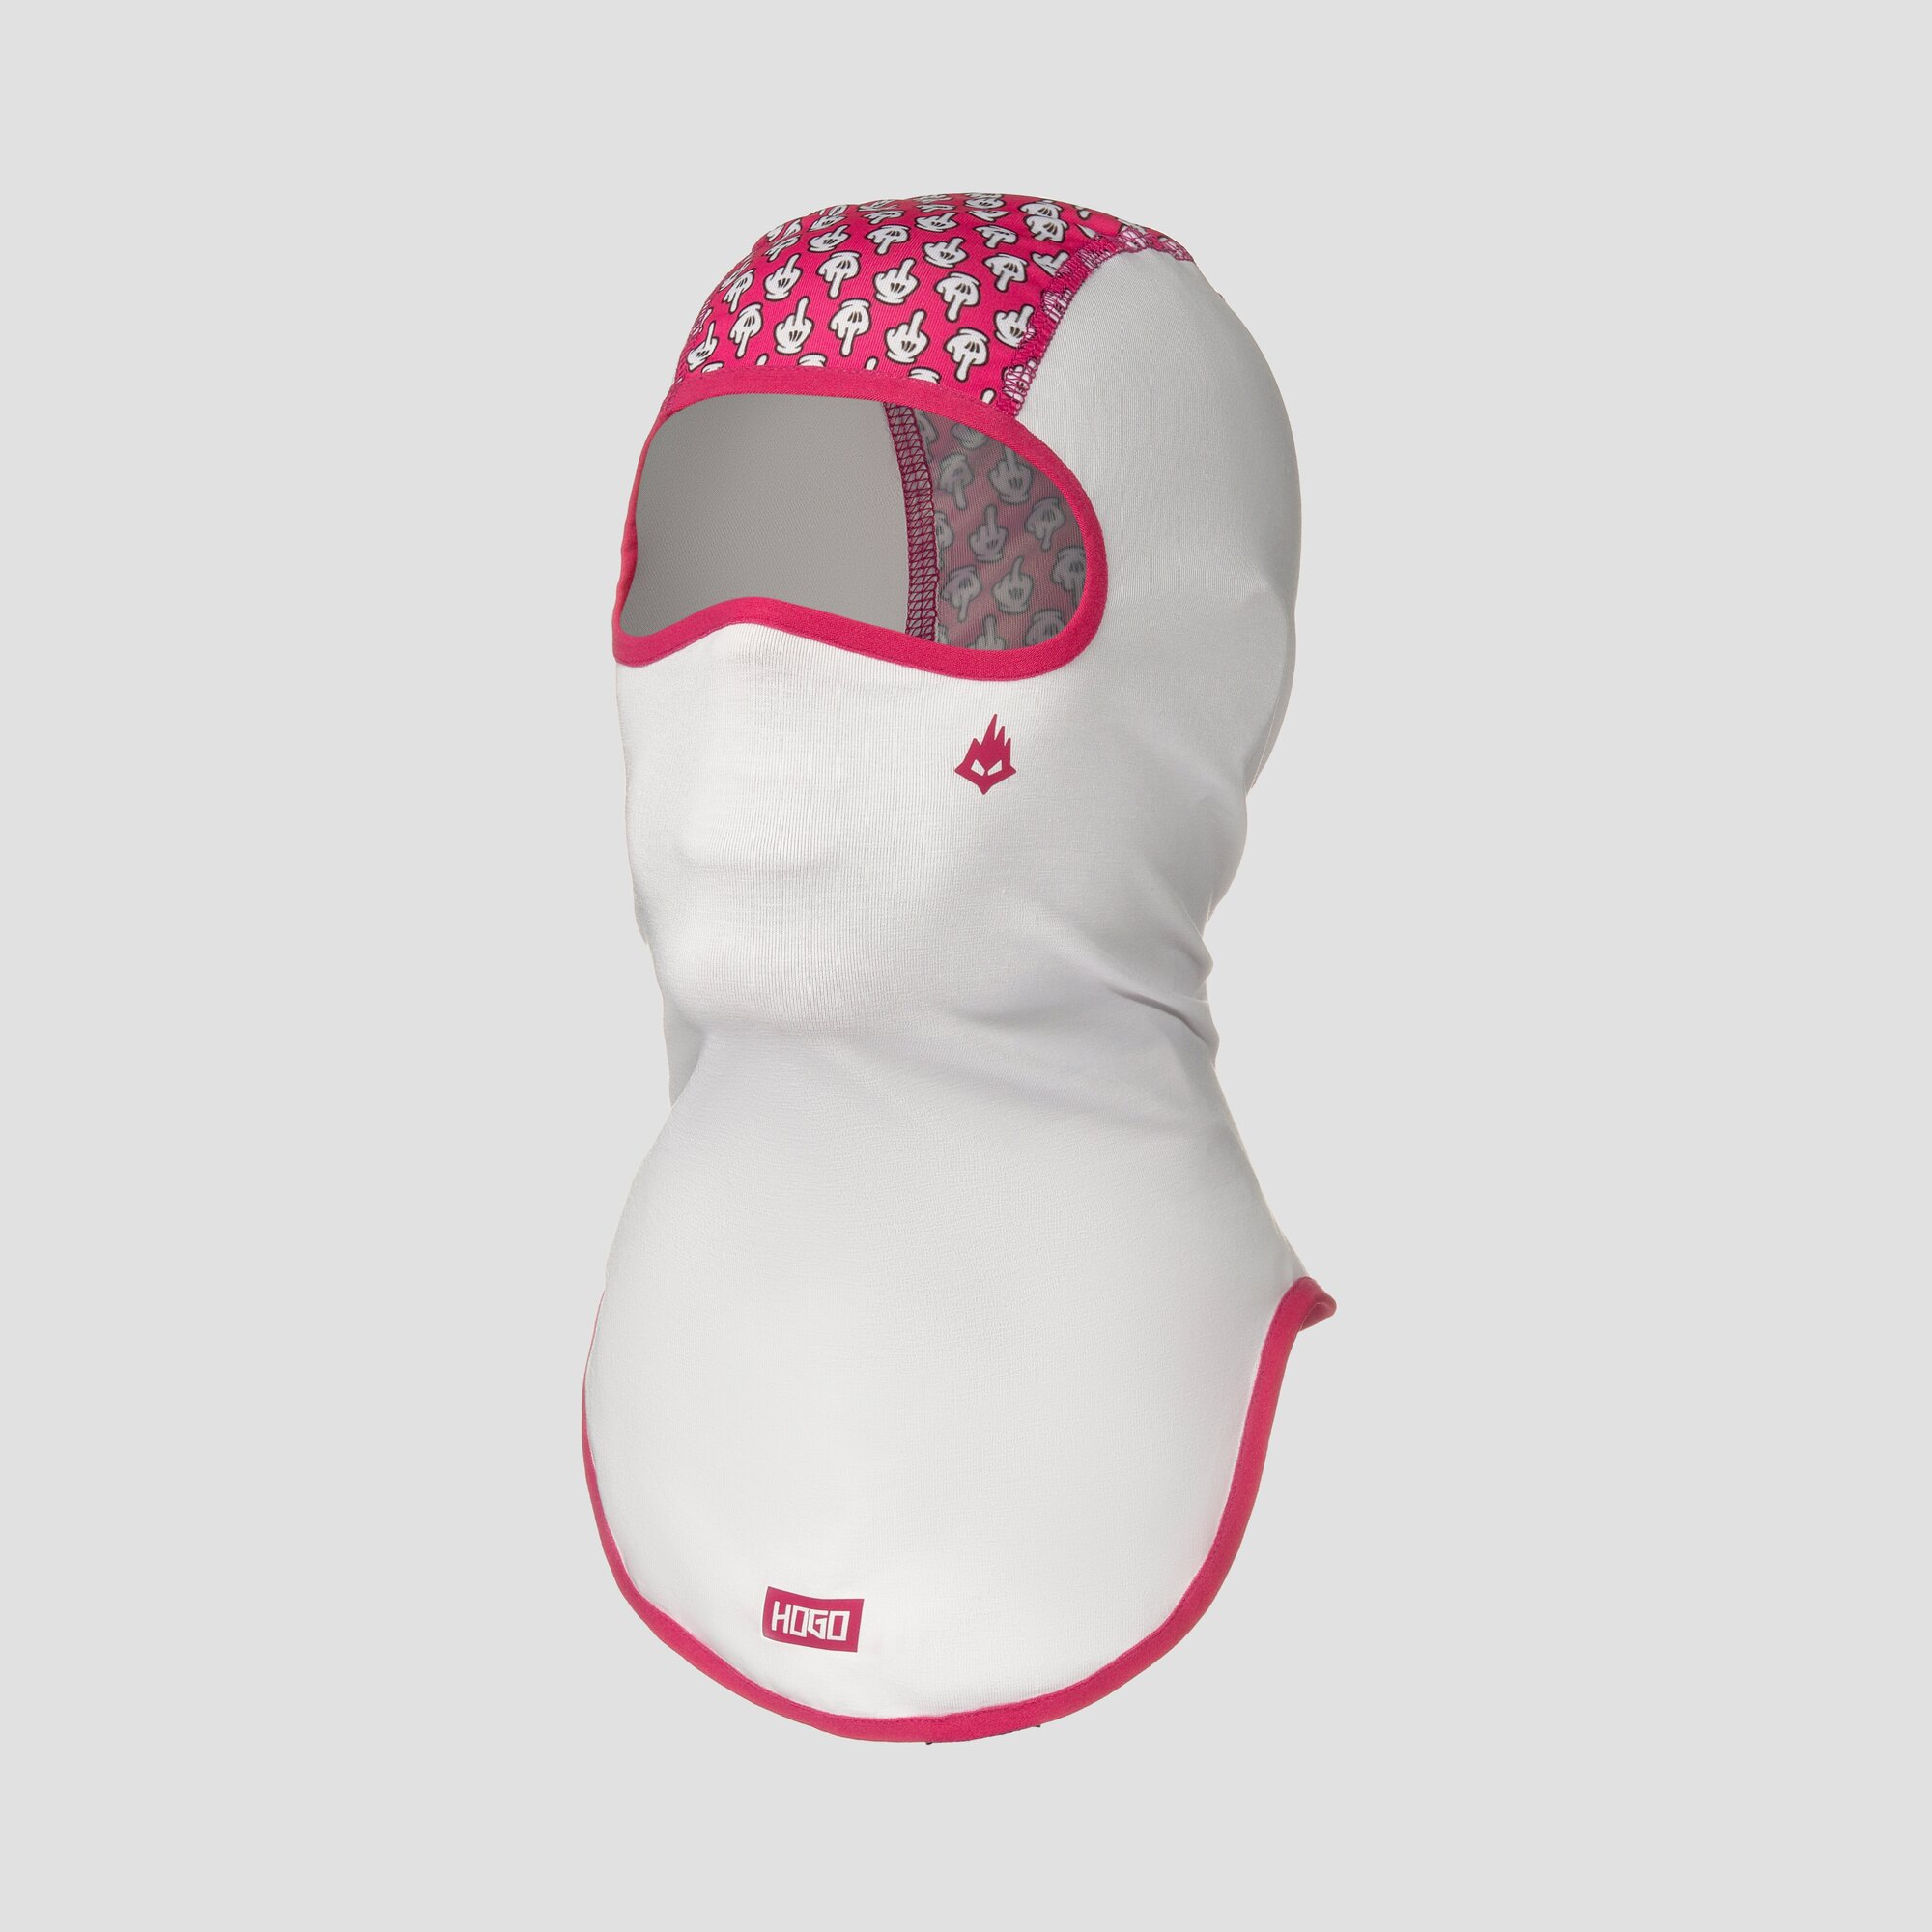 Подшлемник HOGO N1 "Respect", бело-розовый со строчкой фуксия, р. S (50-54 см) / балаклава